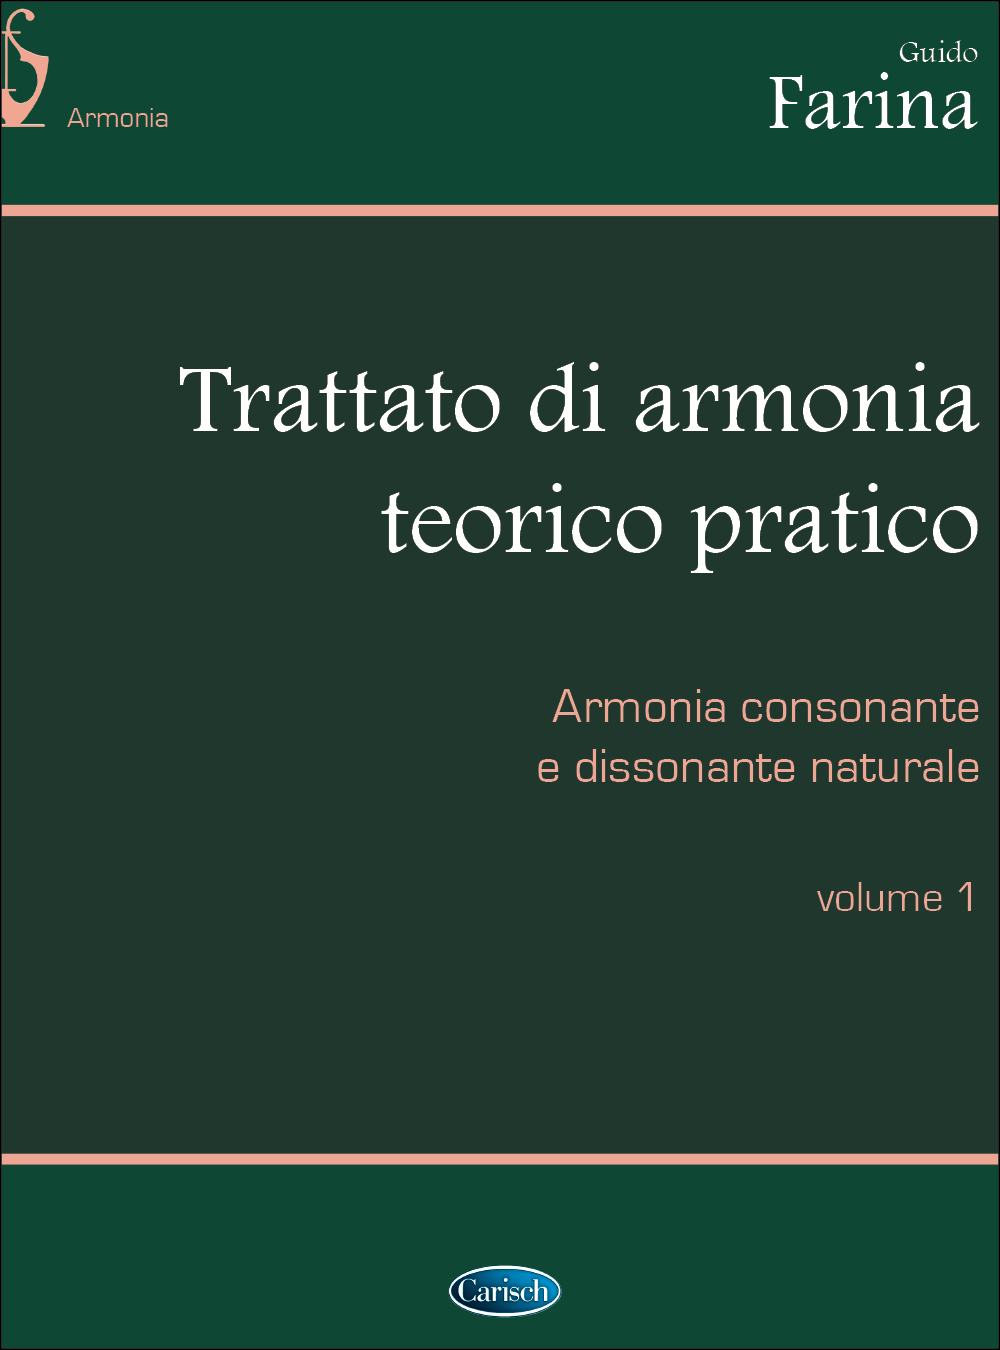 Guido Farina: Trattato Di Armonia Vol. 1: Theory